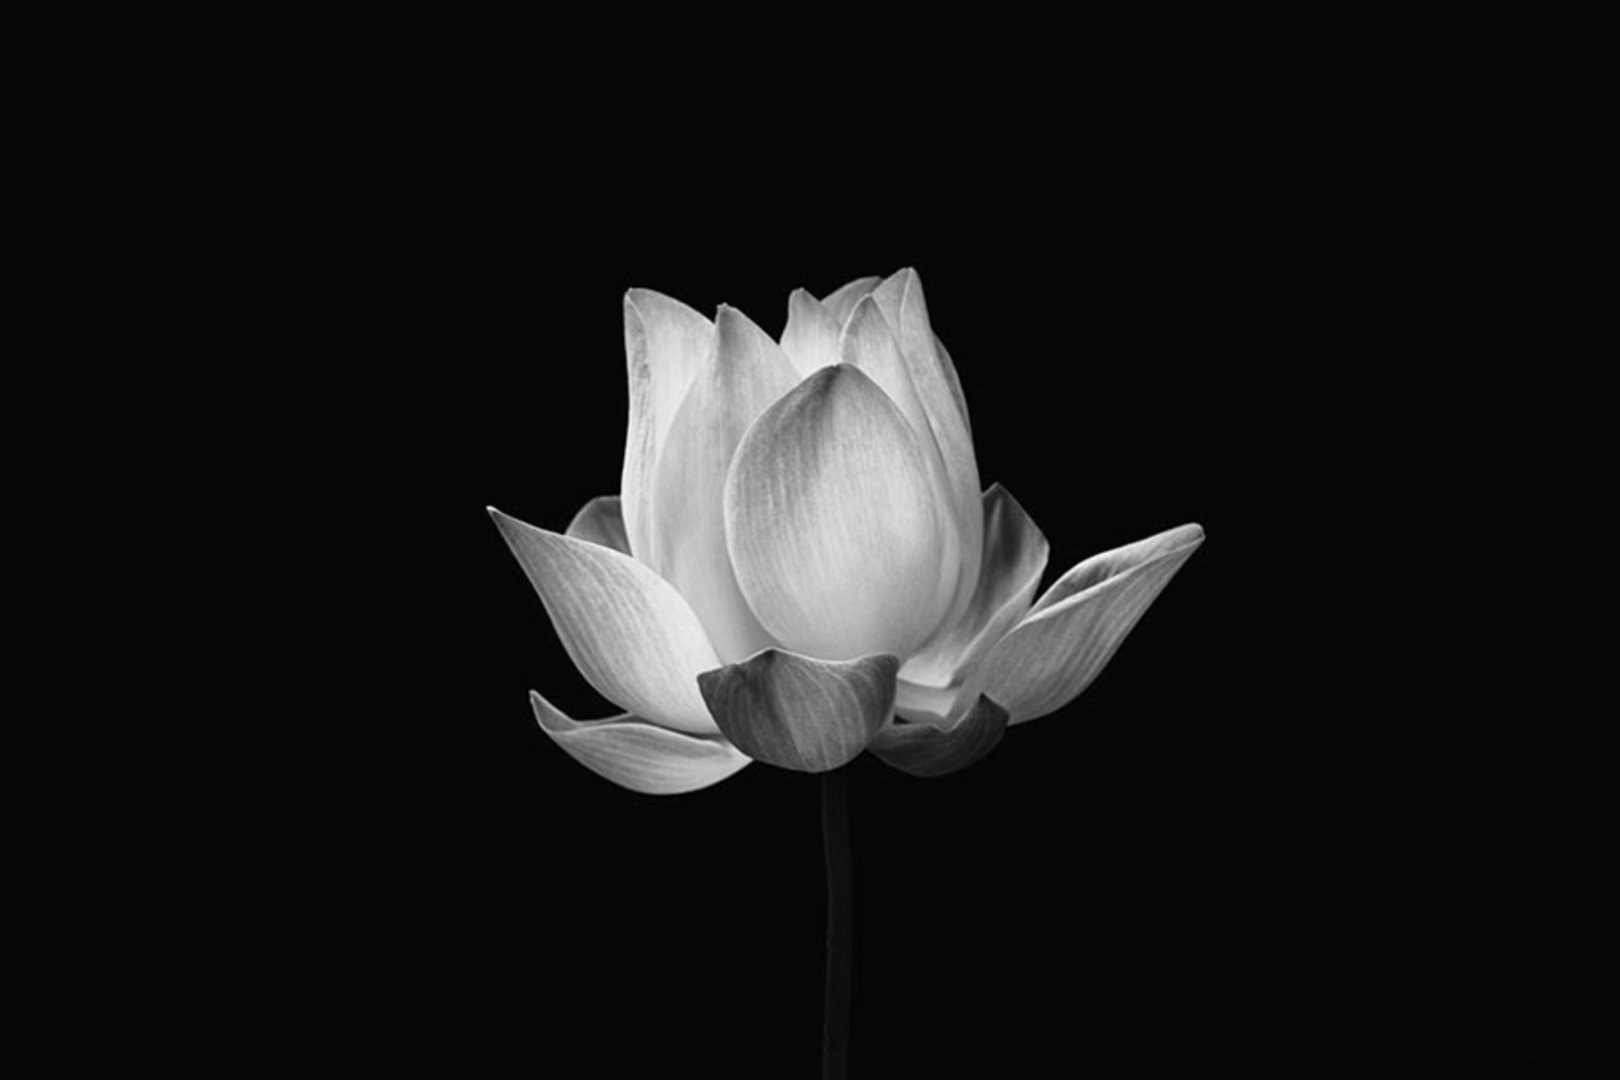 Hình ảnh hoa sen trắng nền đen là một trong những điều đẹp nhất mà mắt con người từng chiêm ngưỡng. Hoa sen được gắn liền với sự thanh tịnh và sự nghiêm trang, đúng như bức tranh hoa sen trắng nền đen cực kỳ tinh tế và ấn tượng này. Hãy để bức ảnh này đưa bạn đến với một thế giới thật tuyệt vời!